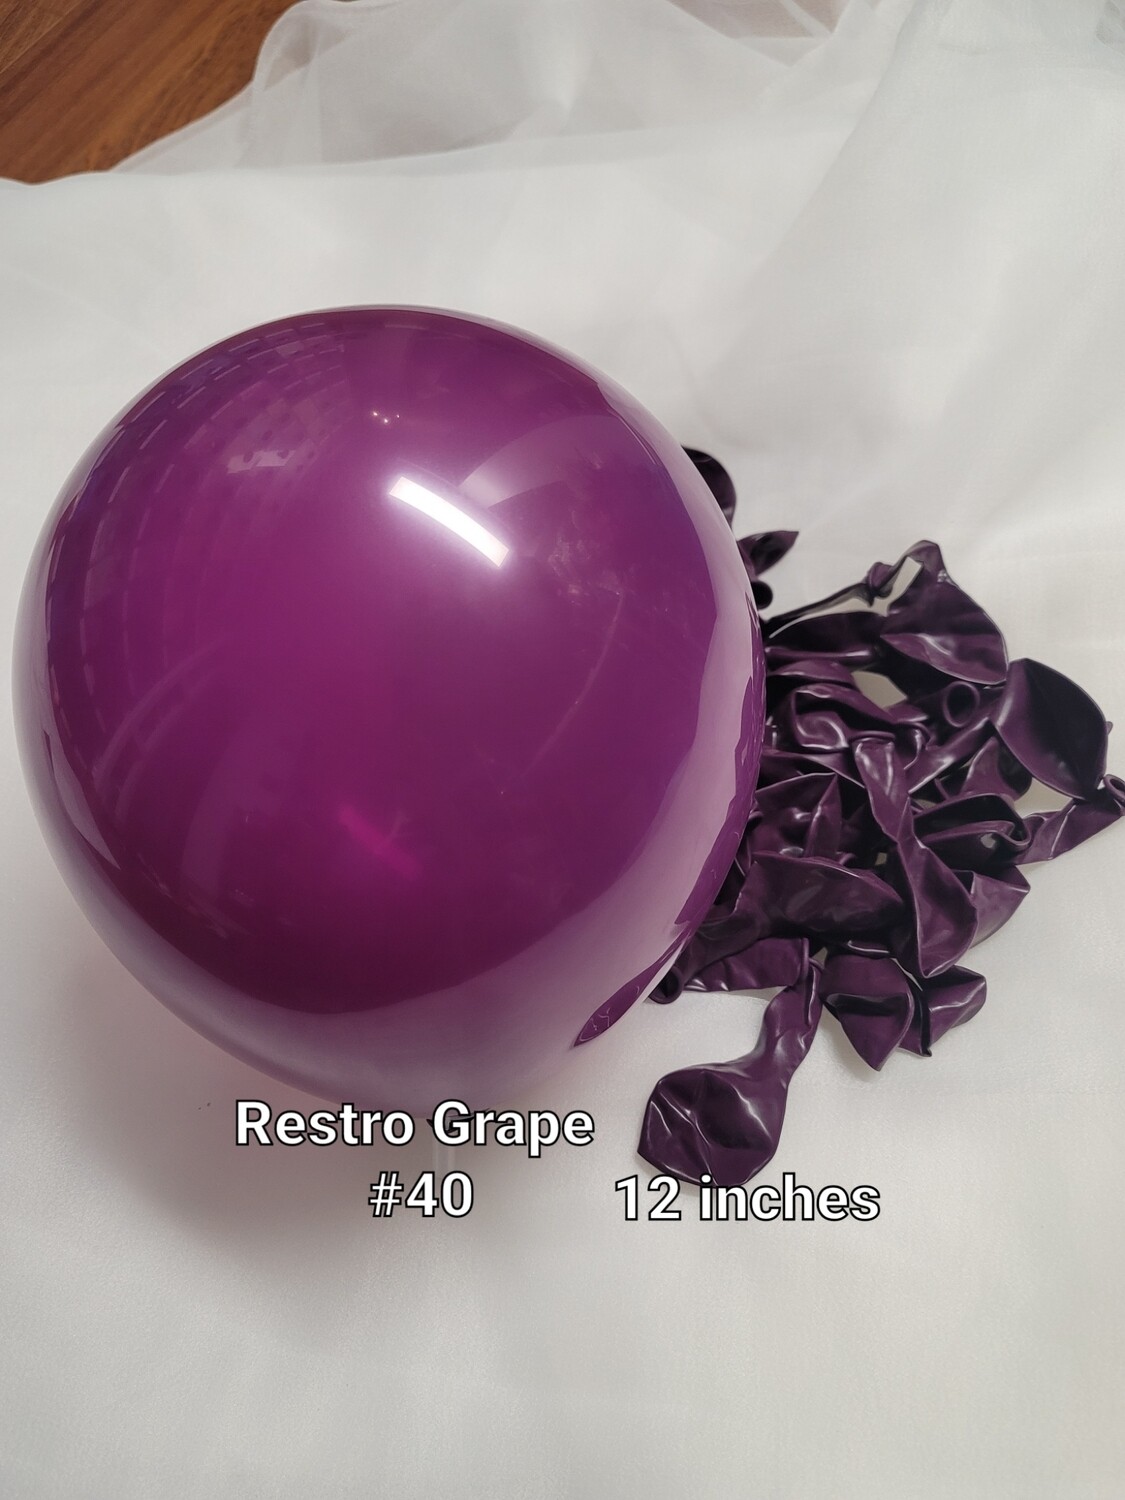 Restro Grape balloon